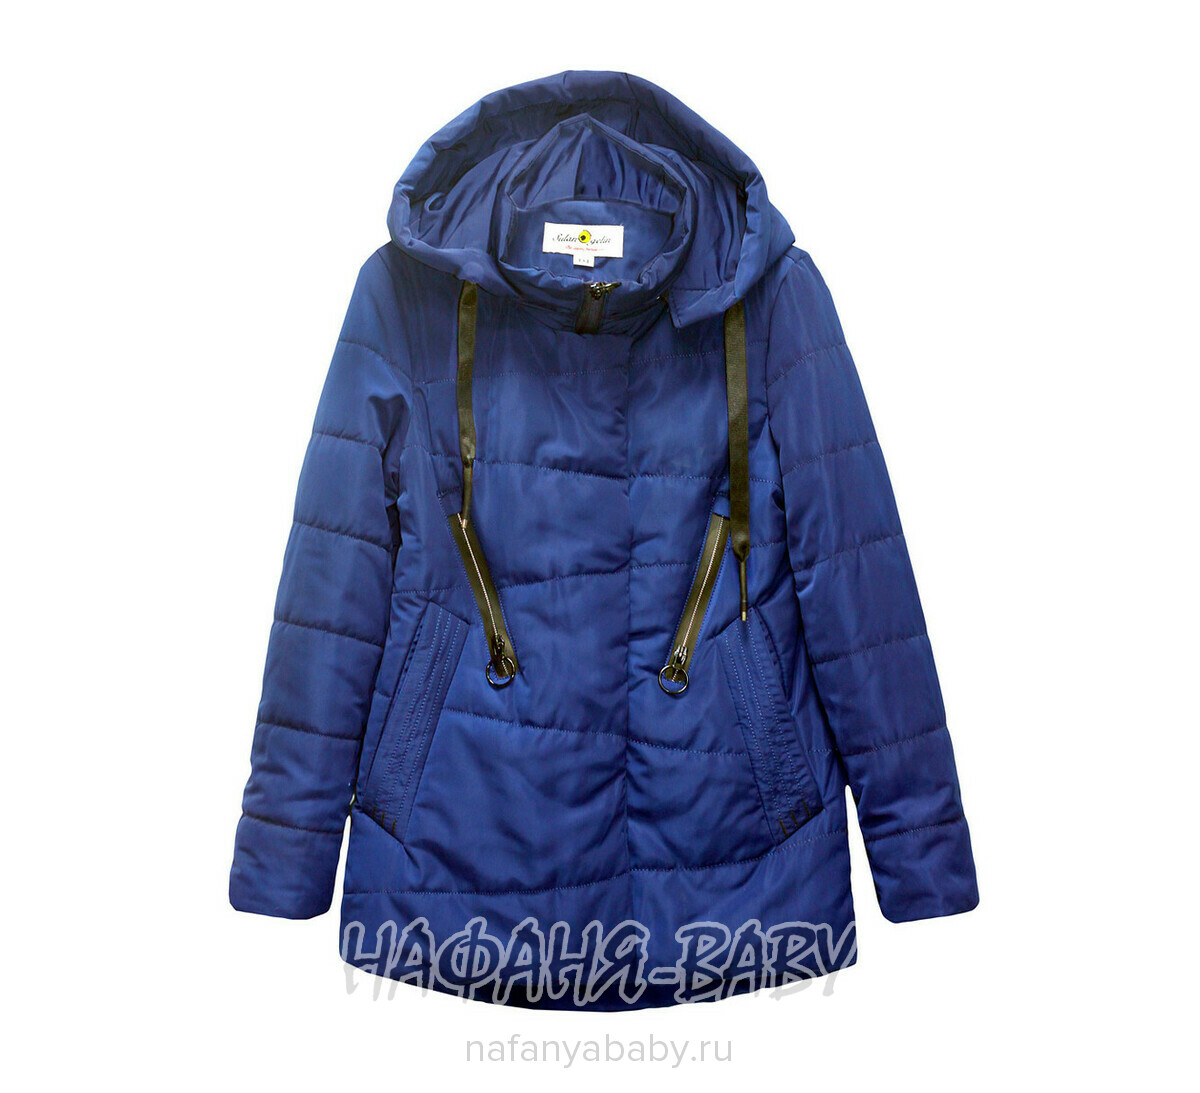 Подростковая демисезонная куртка DELFIN арт: 802, 10-15 лет, оптом Китай (Пекин)